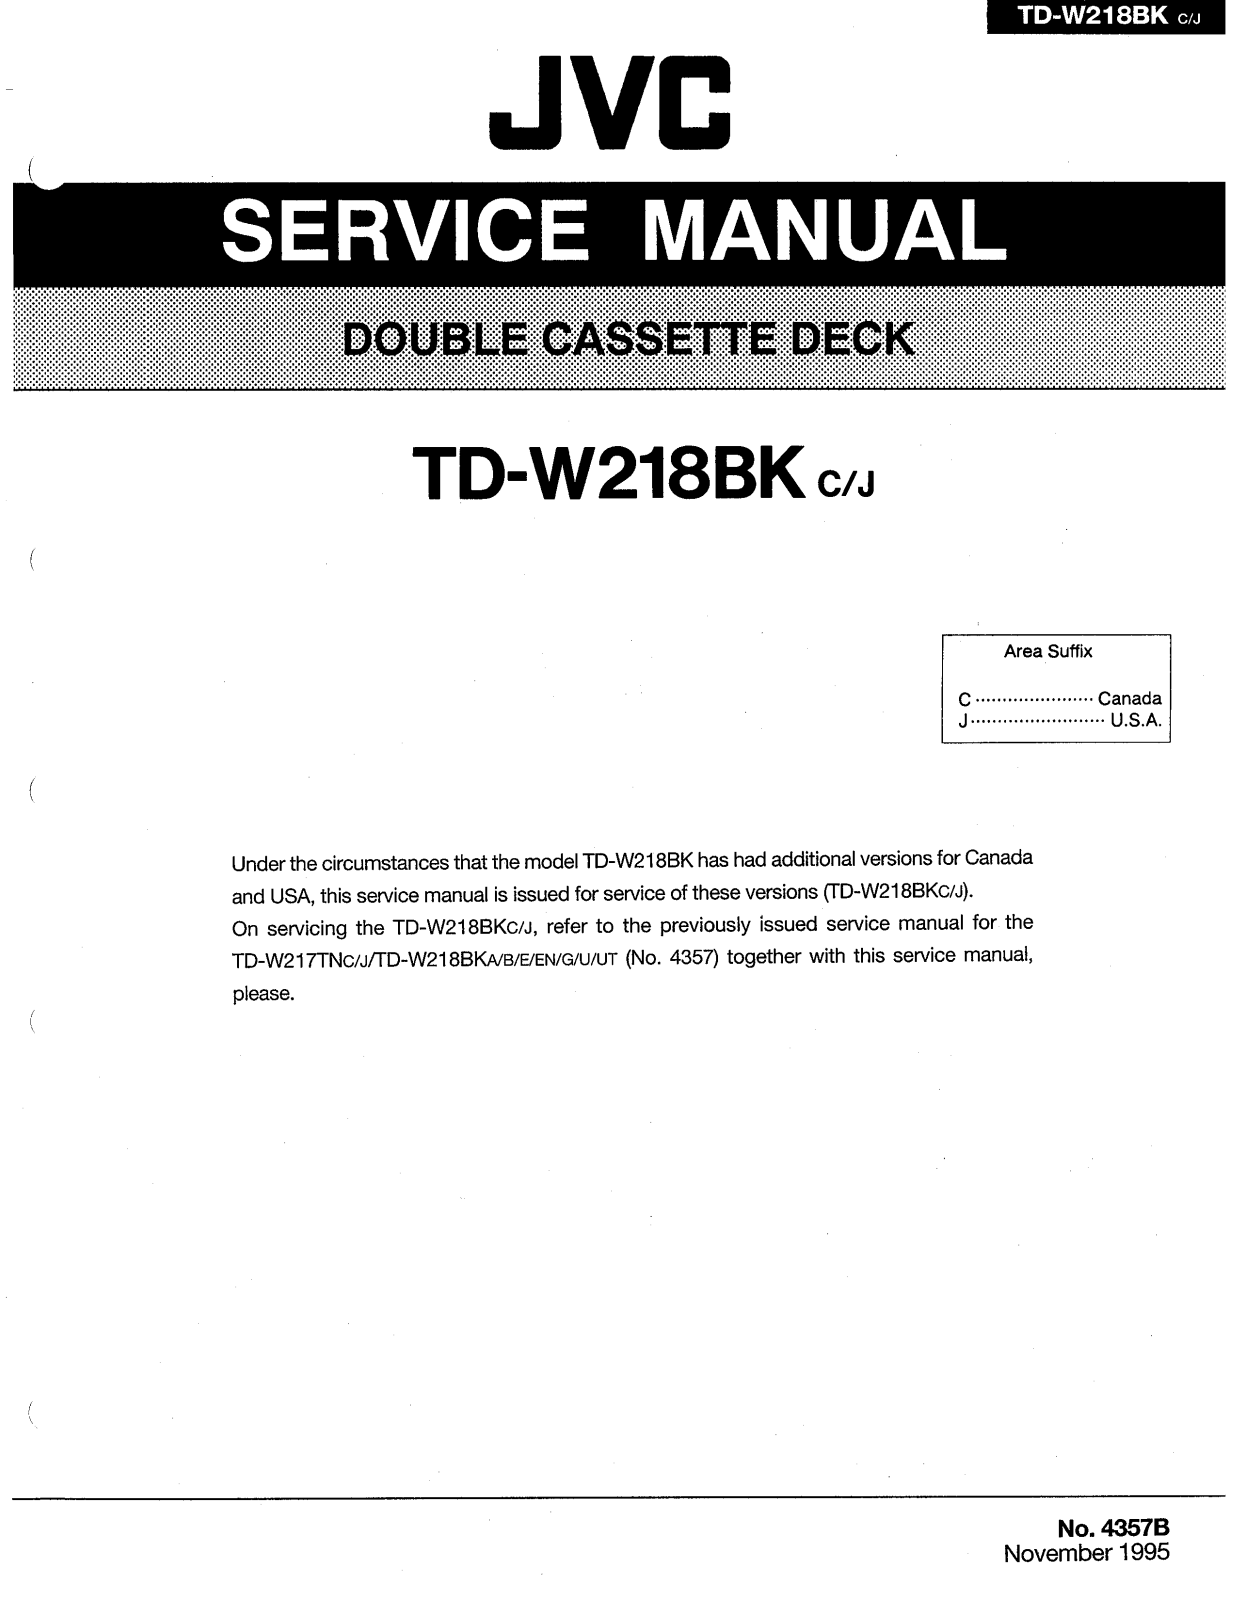 Jvc TD-W218-BK Service Manual